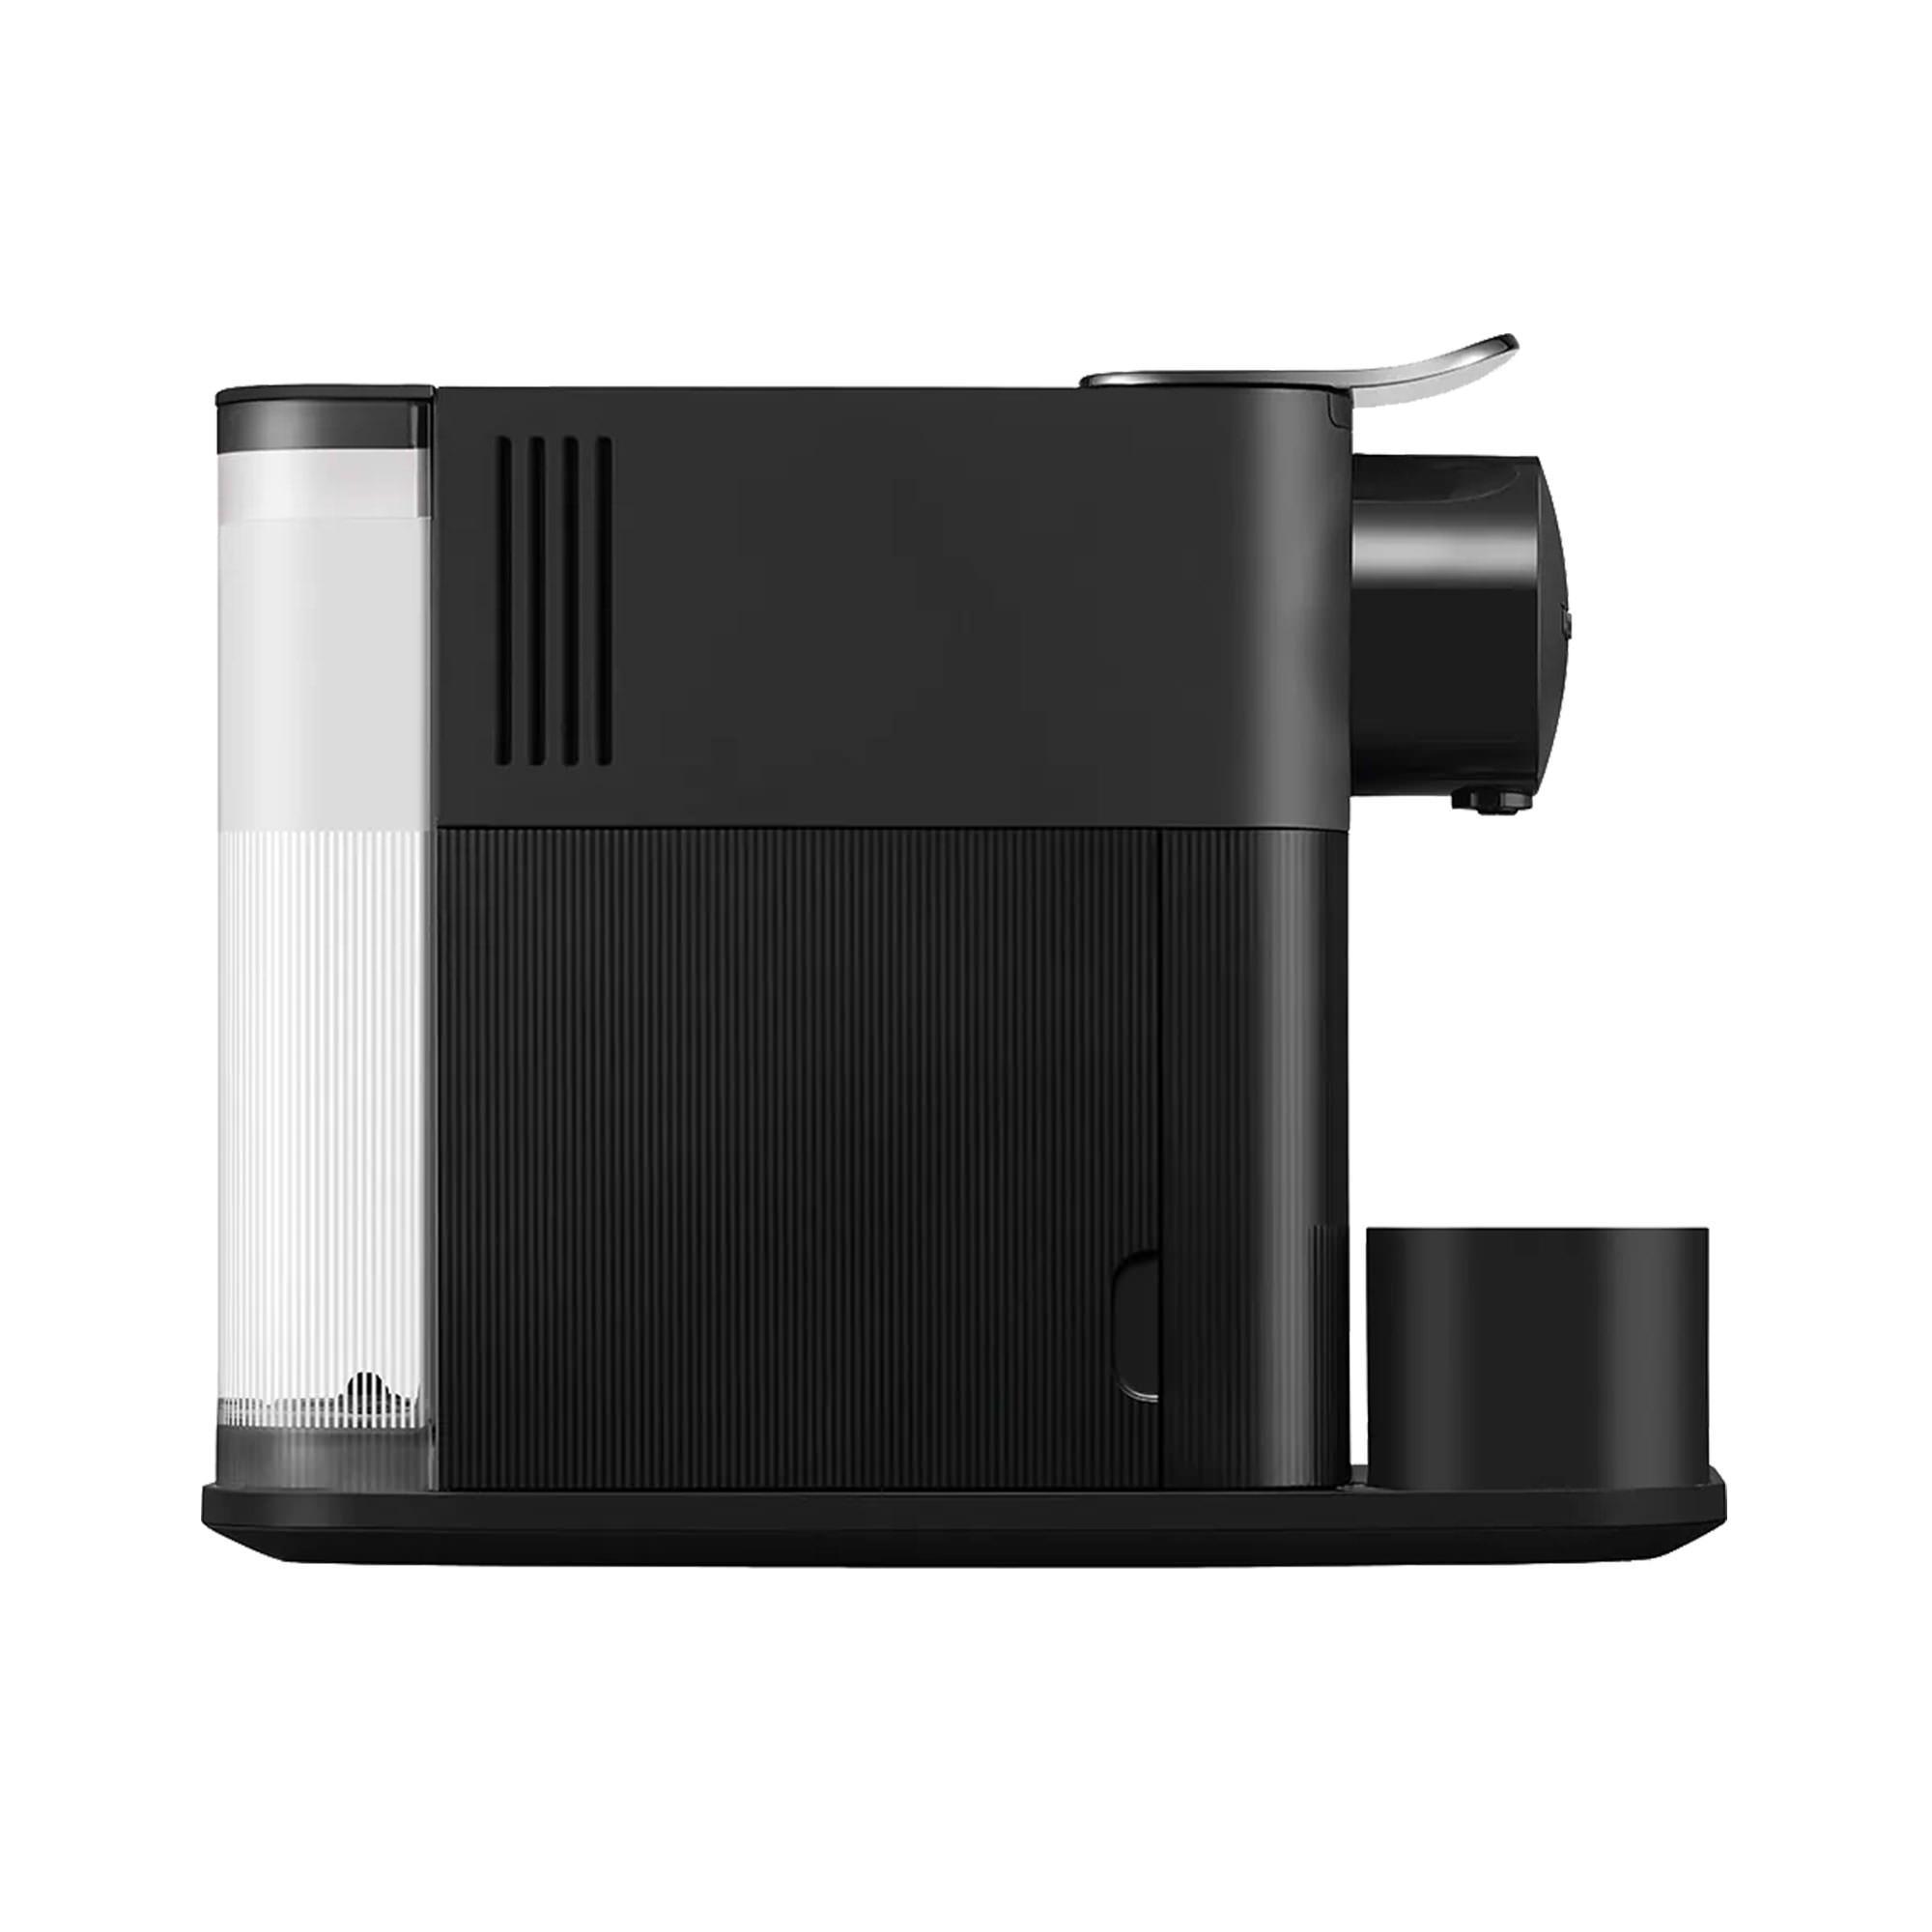 DeLonghi Nespresso Lattissima One EN510B Coffee Machine Black Image 3